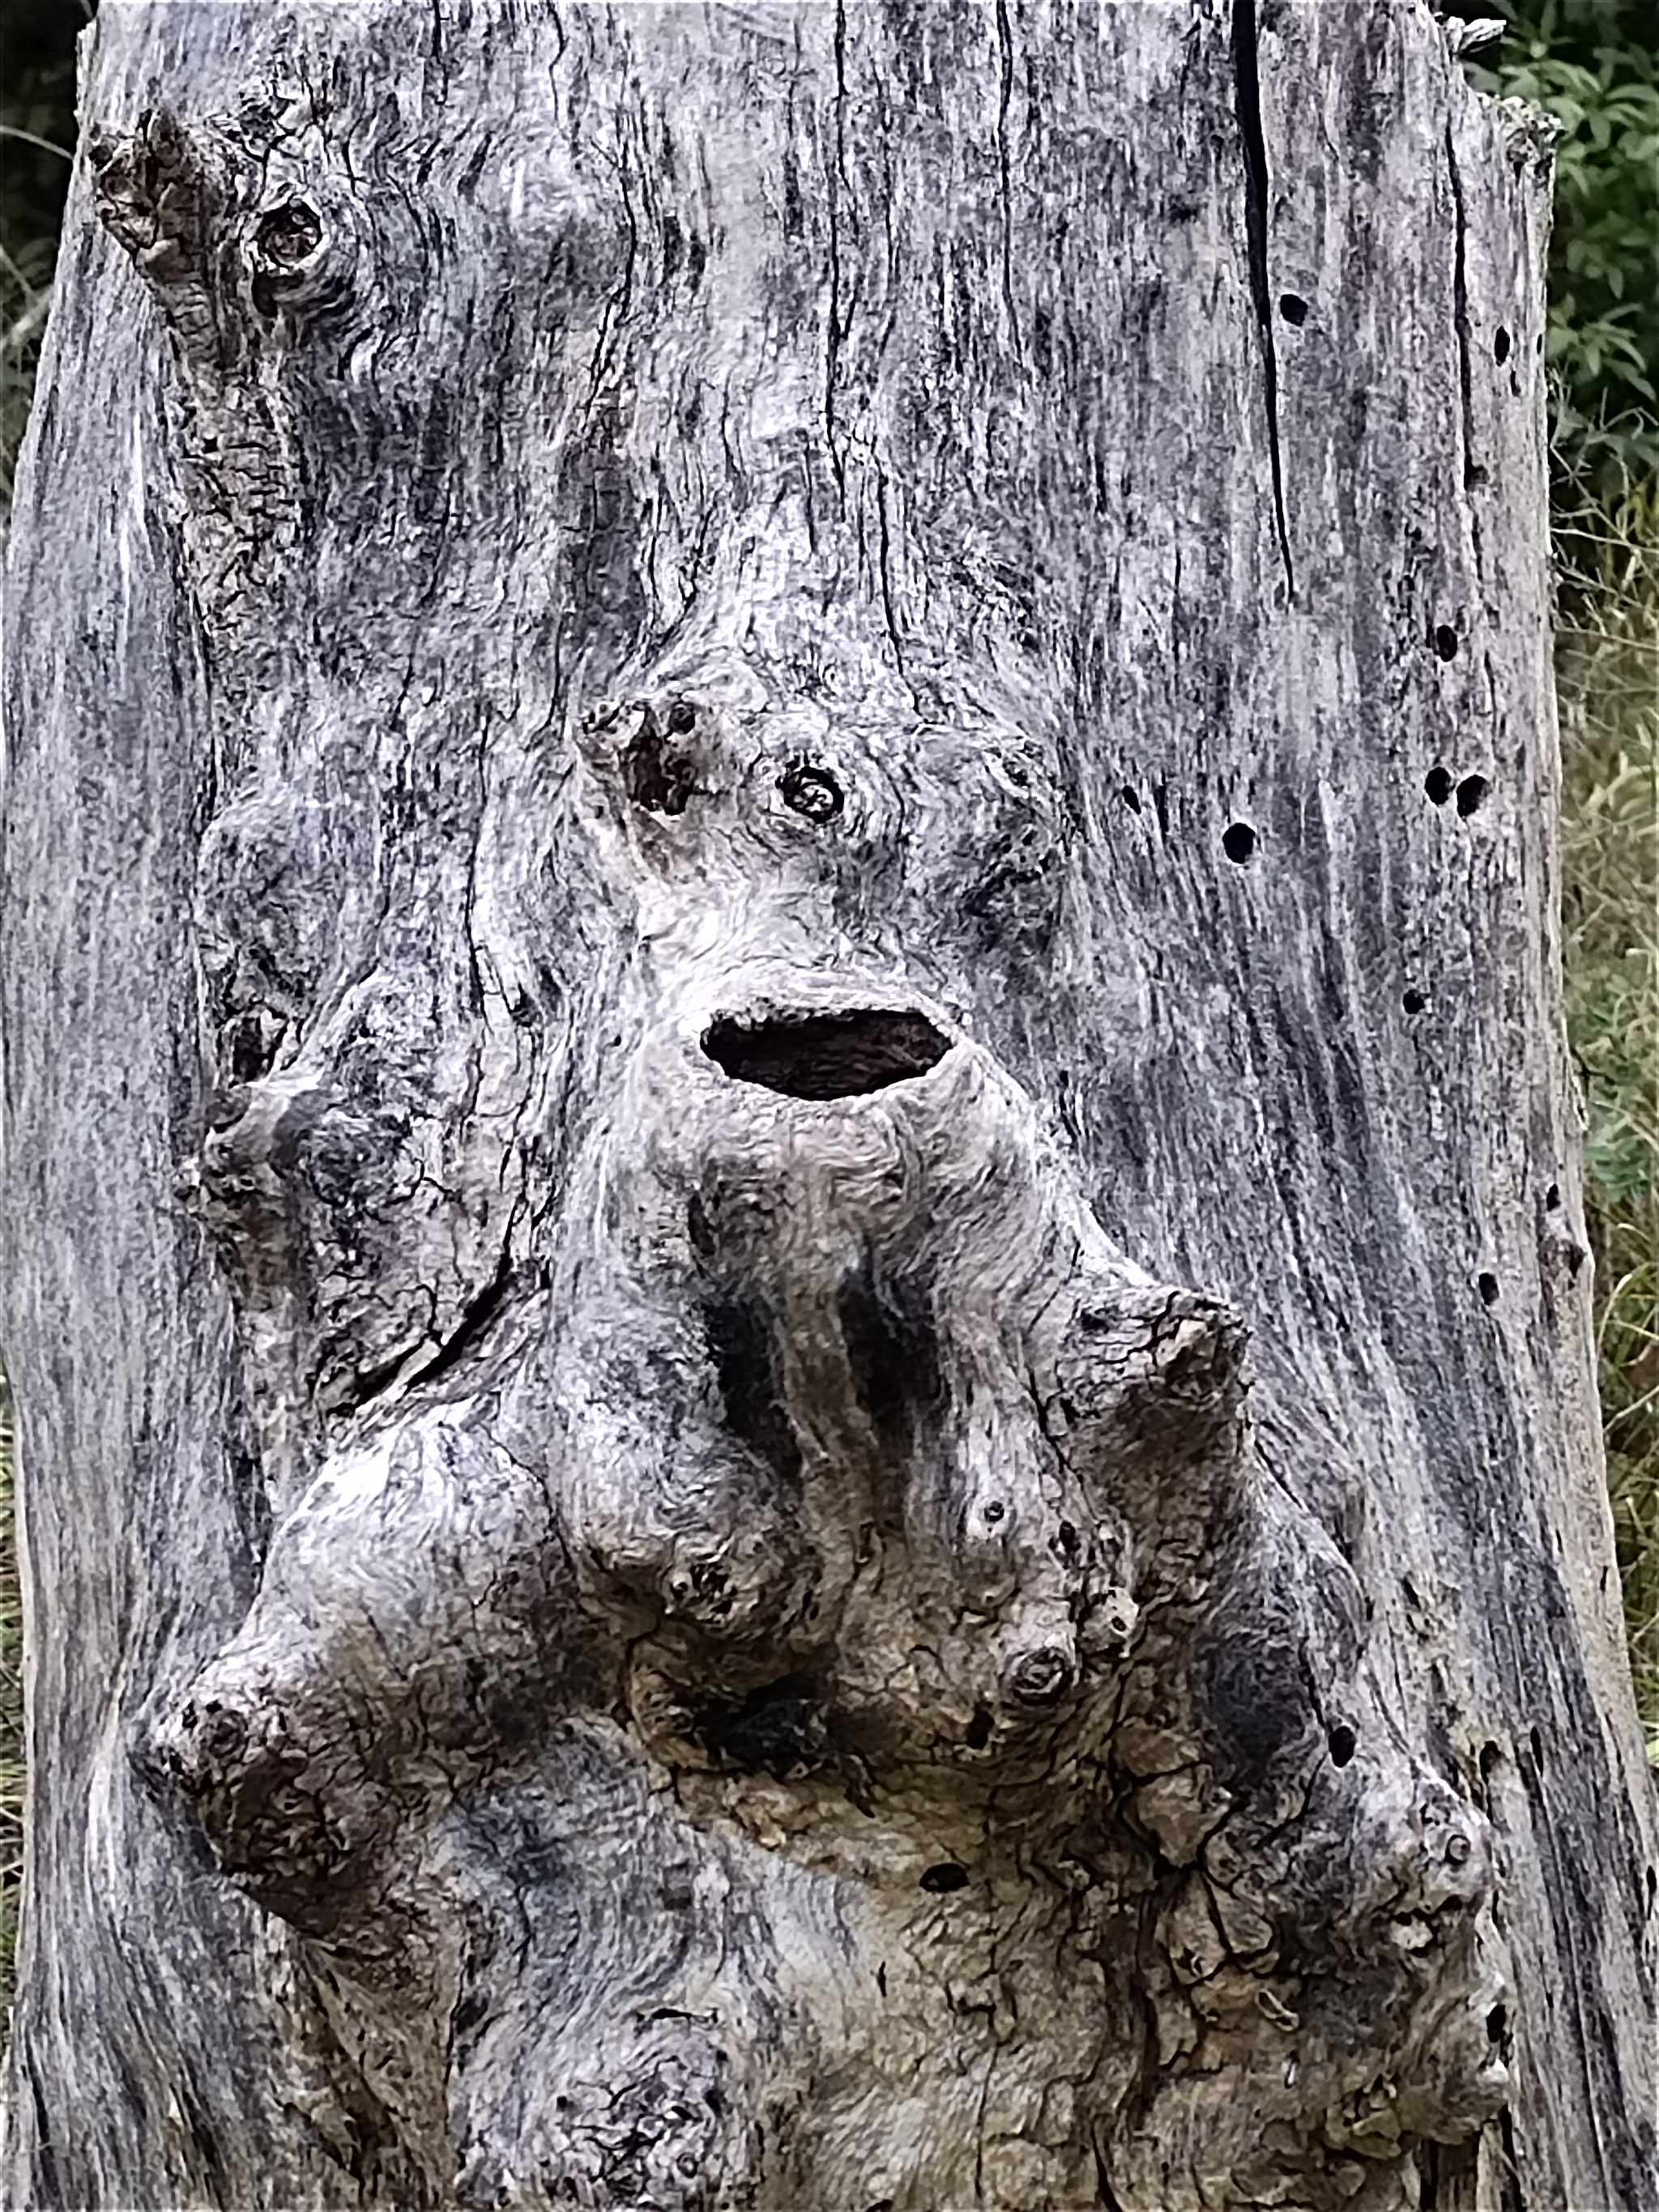 Found a man on a stump - Stump, Men, Pareidolia